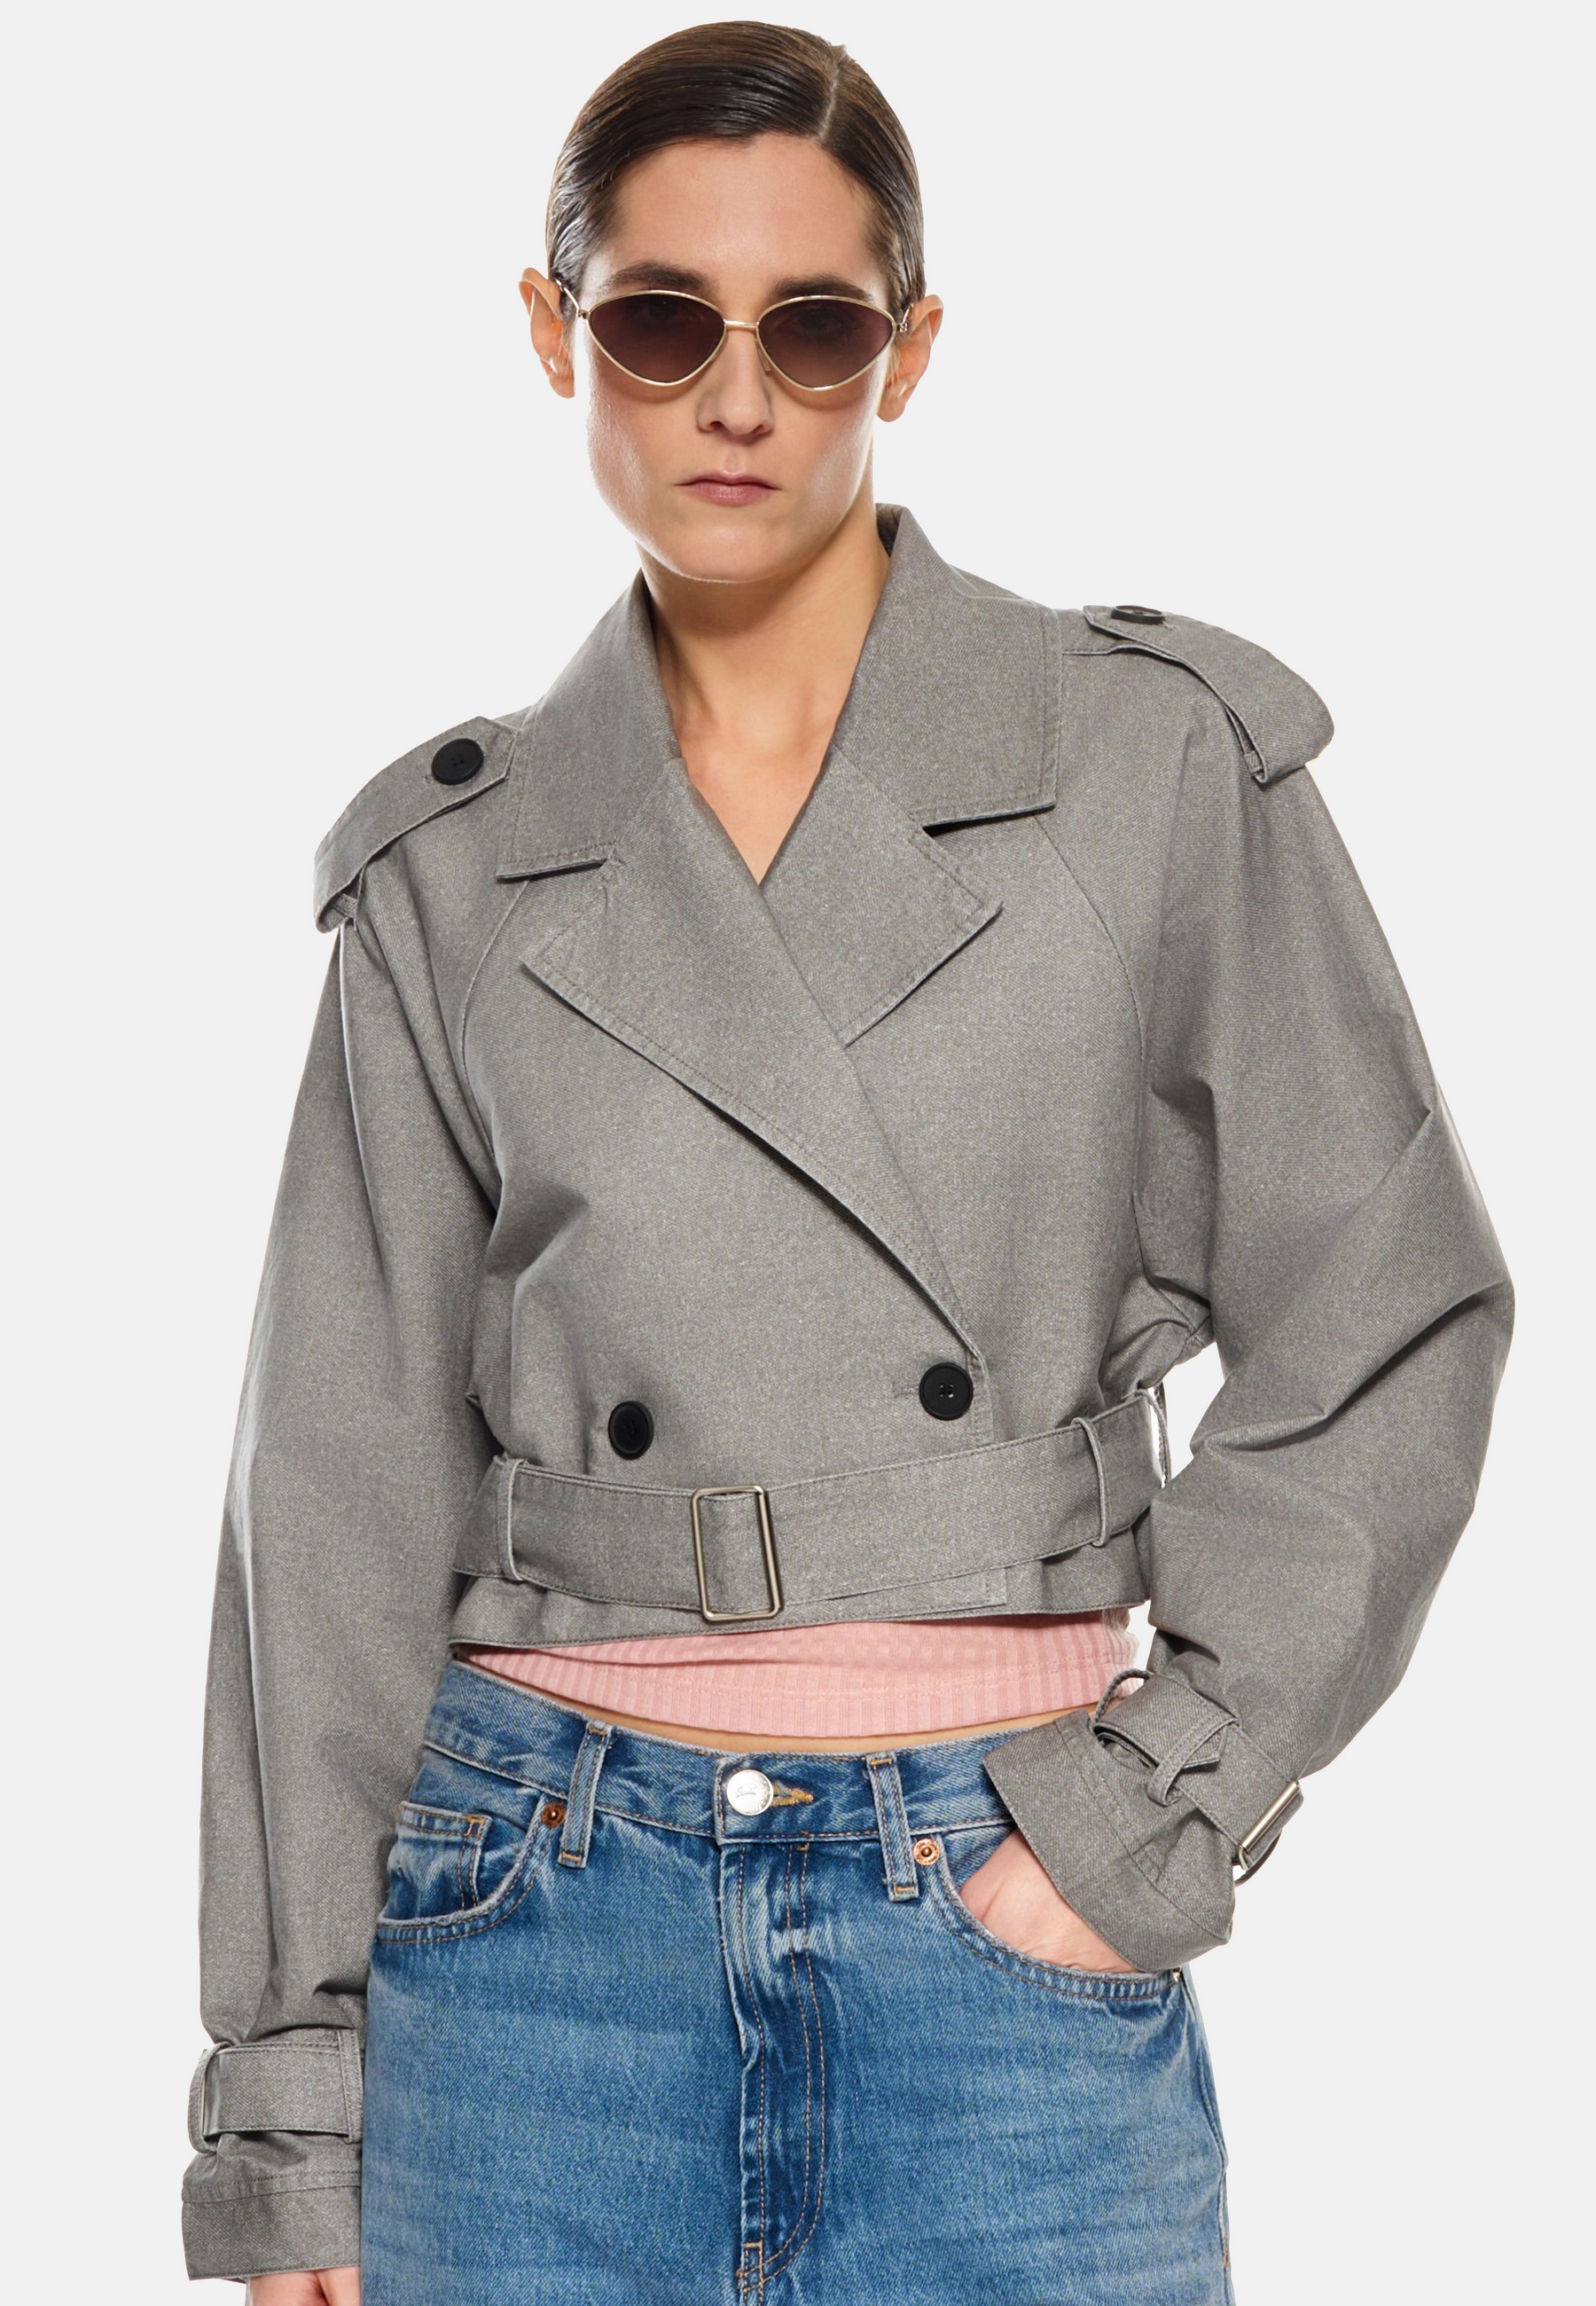 Damen Textil Jacke Elvira in Grau von Ricano - Frontansicht am Model